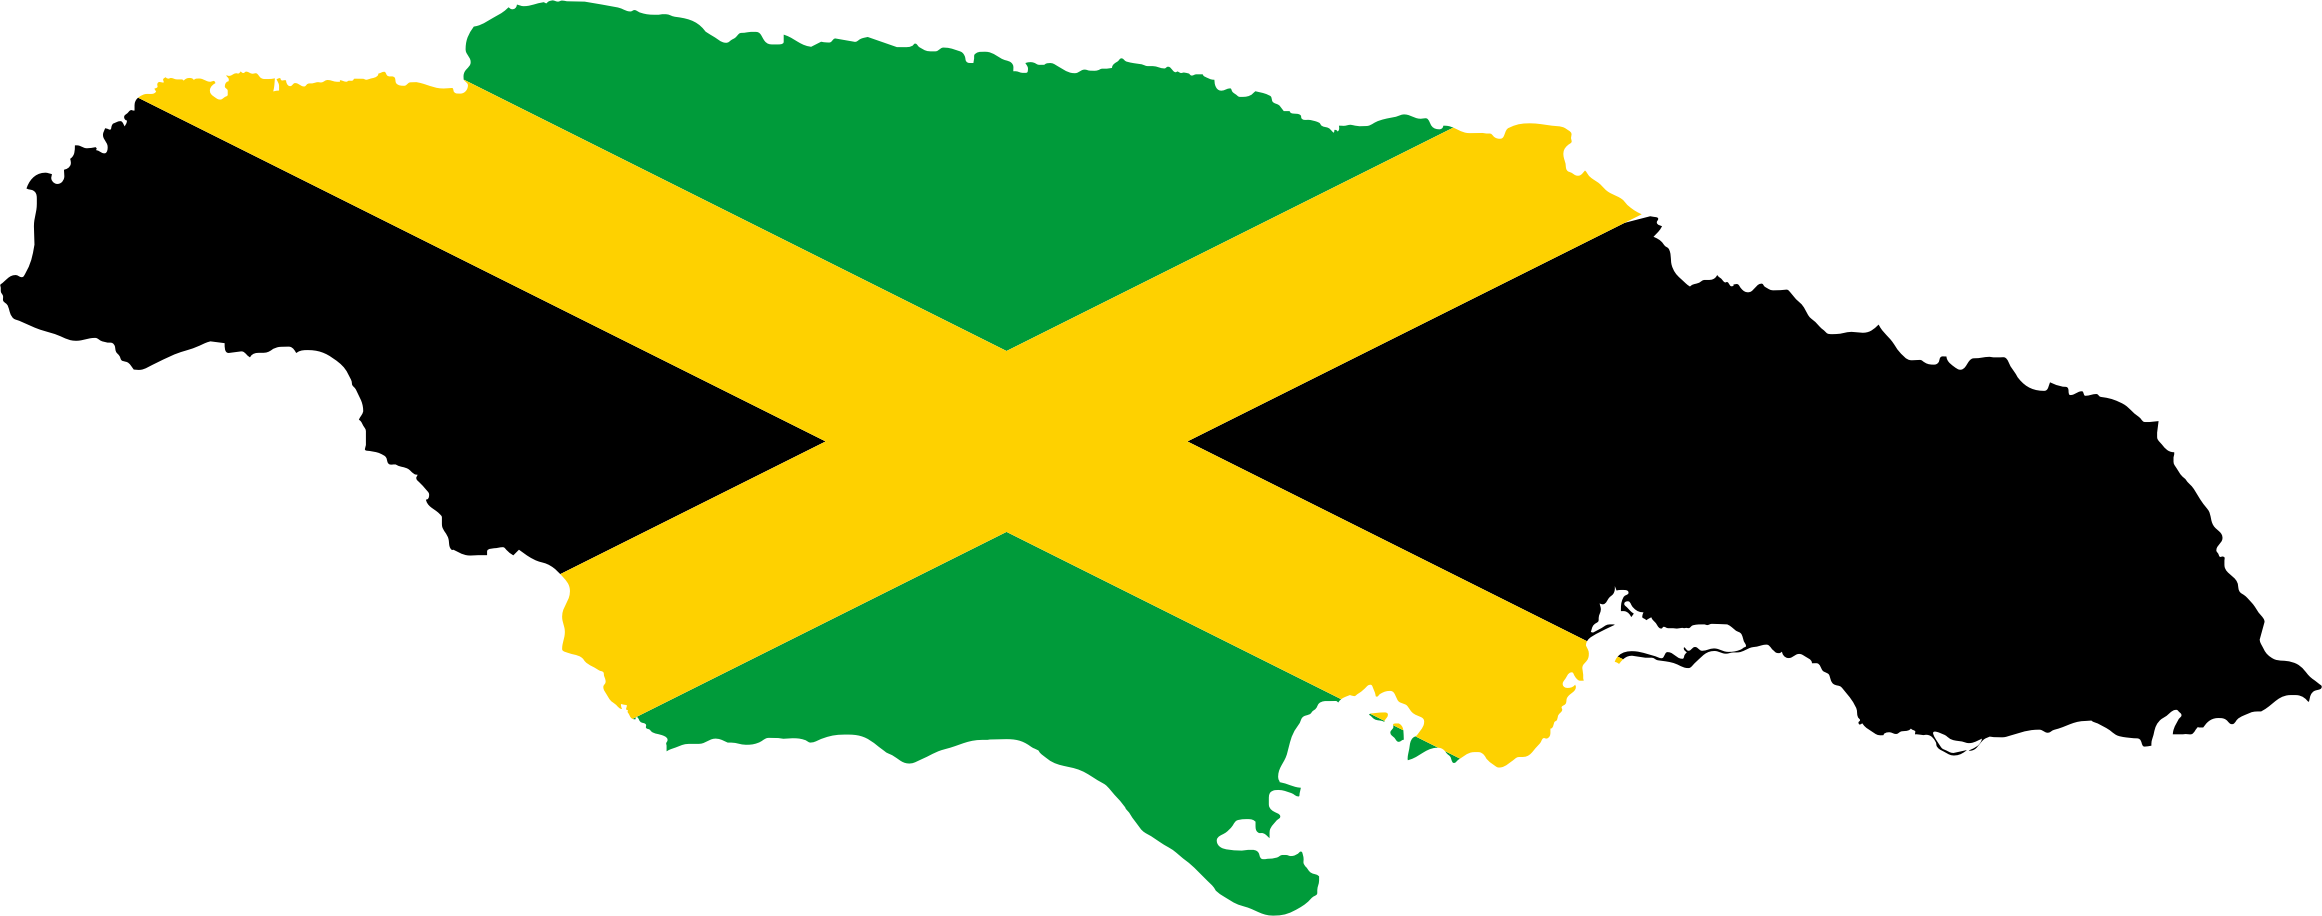 Clipart jamaican flag